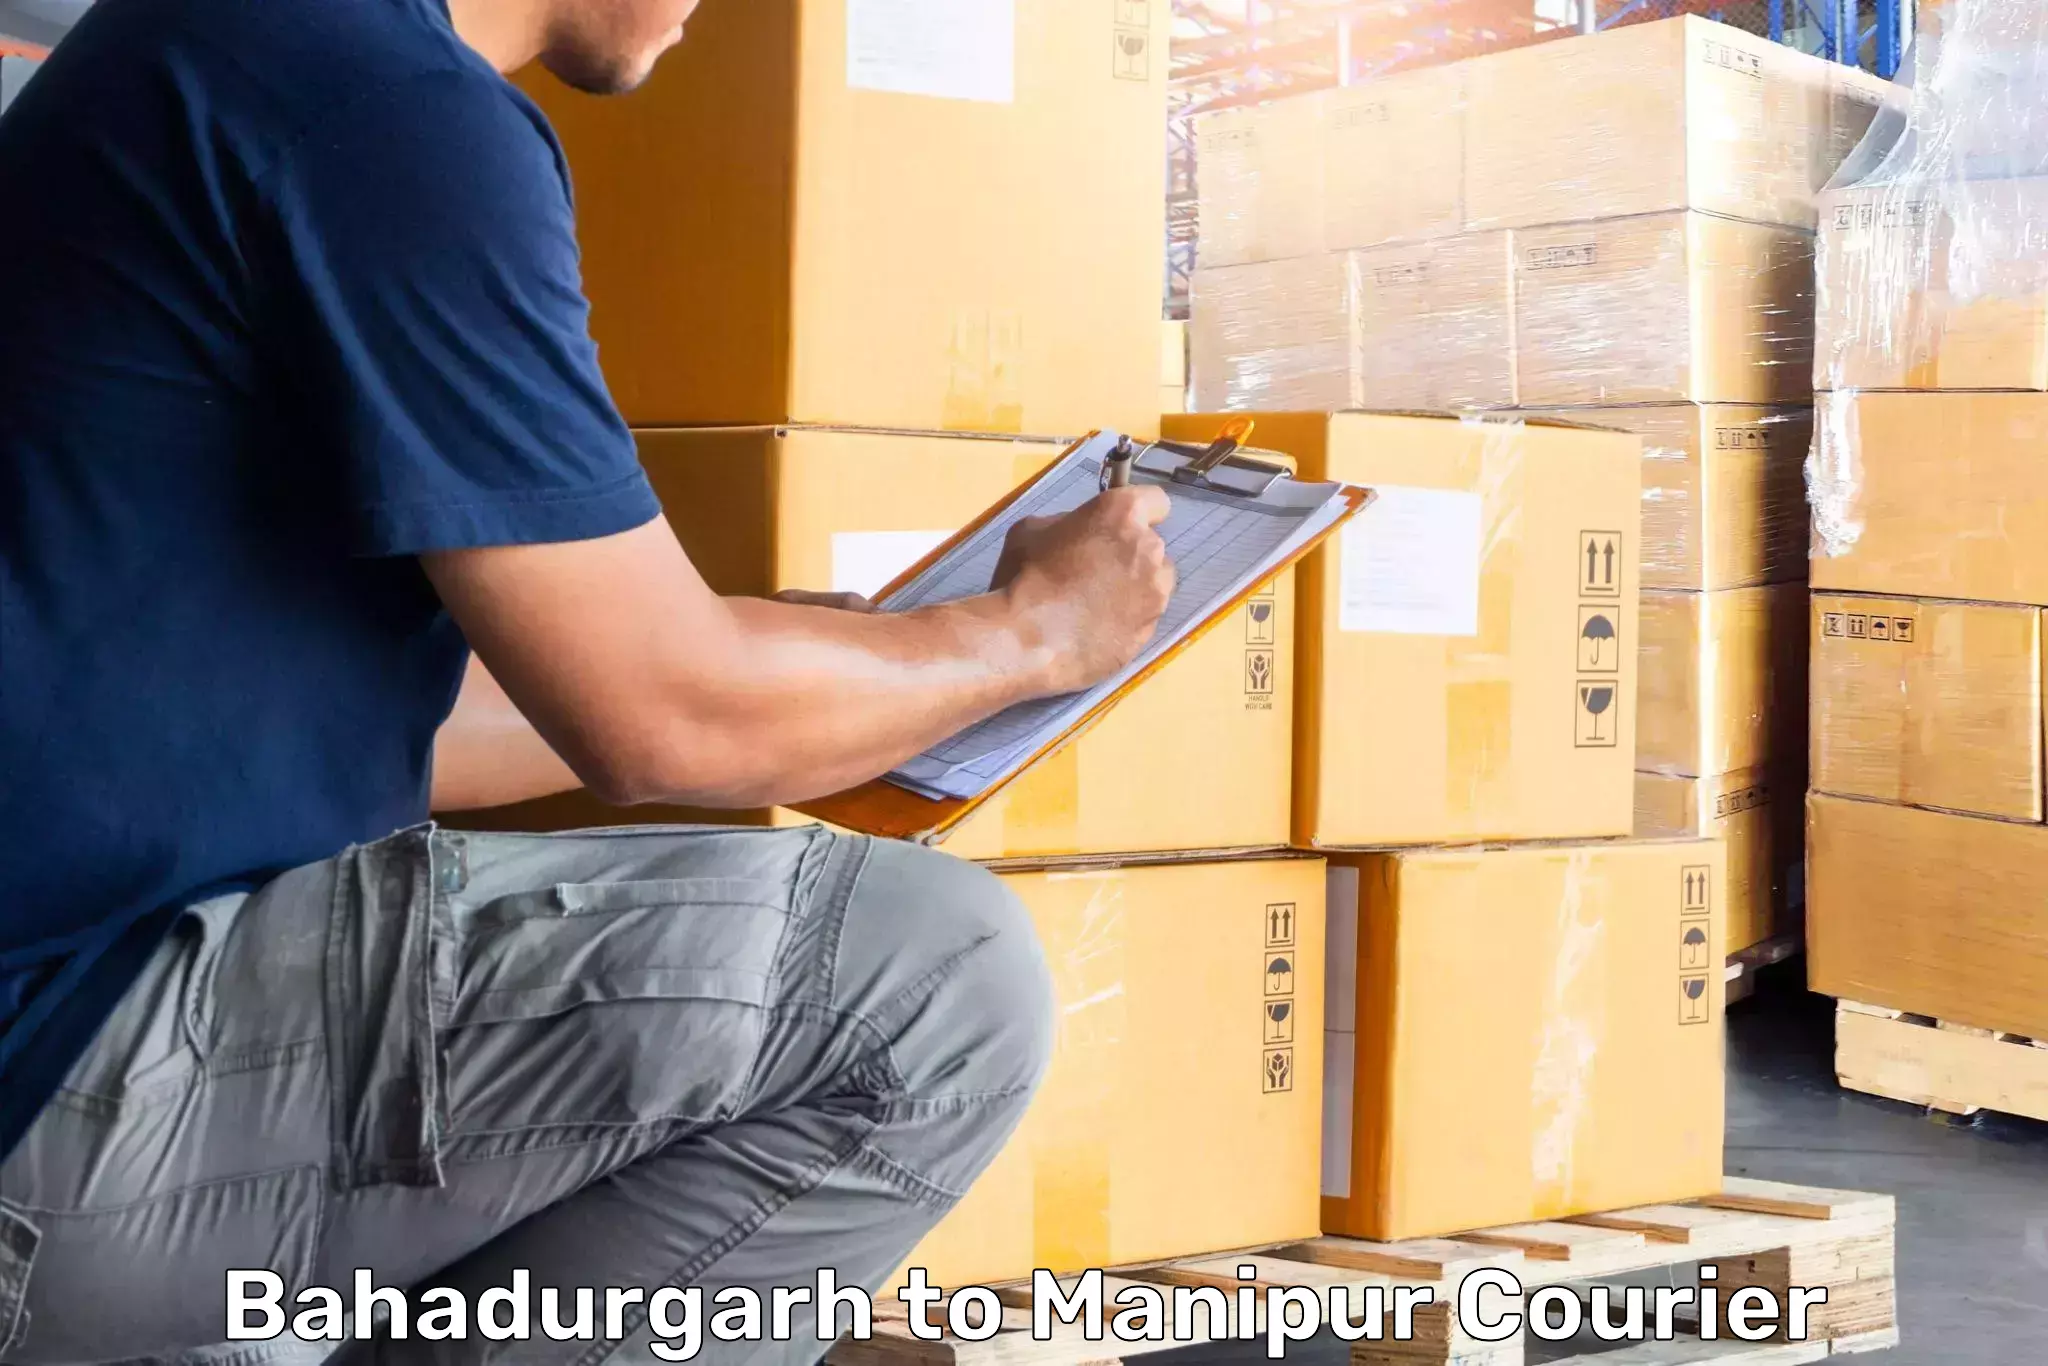 Luggage delivery app Bahadurgarh to Senapati